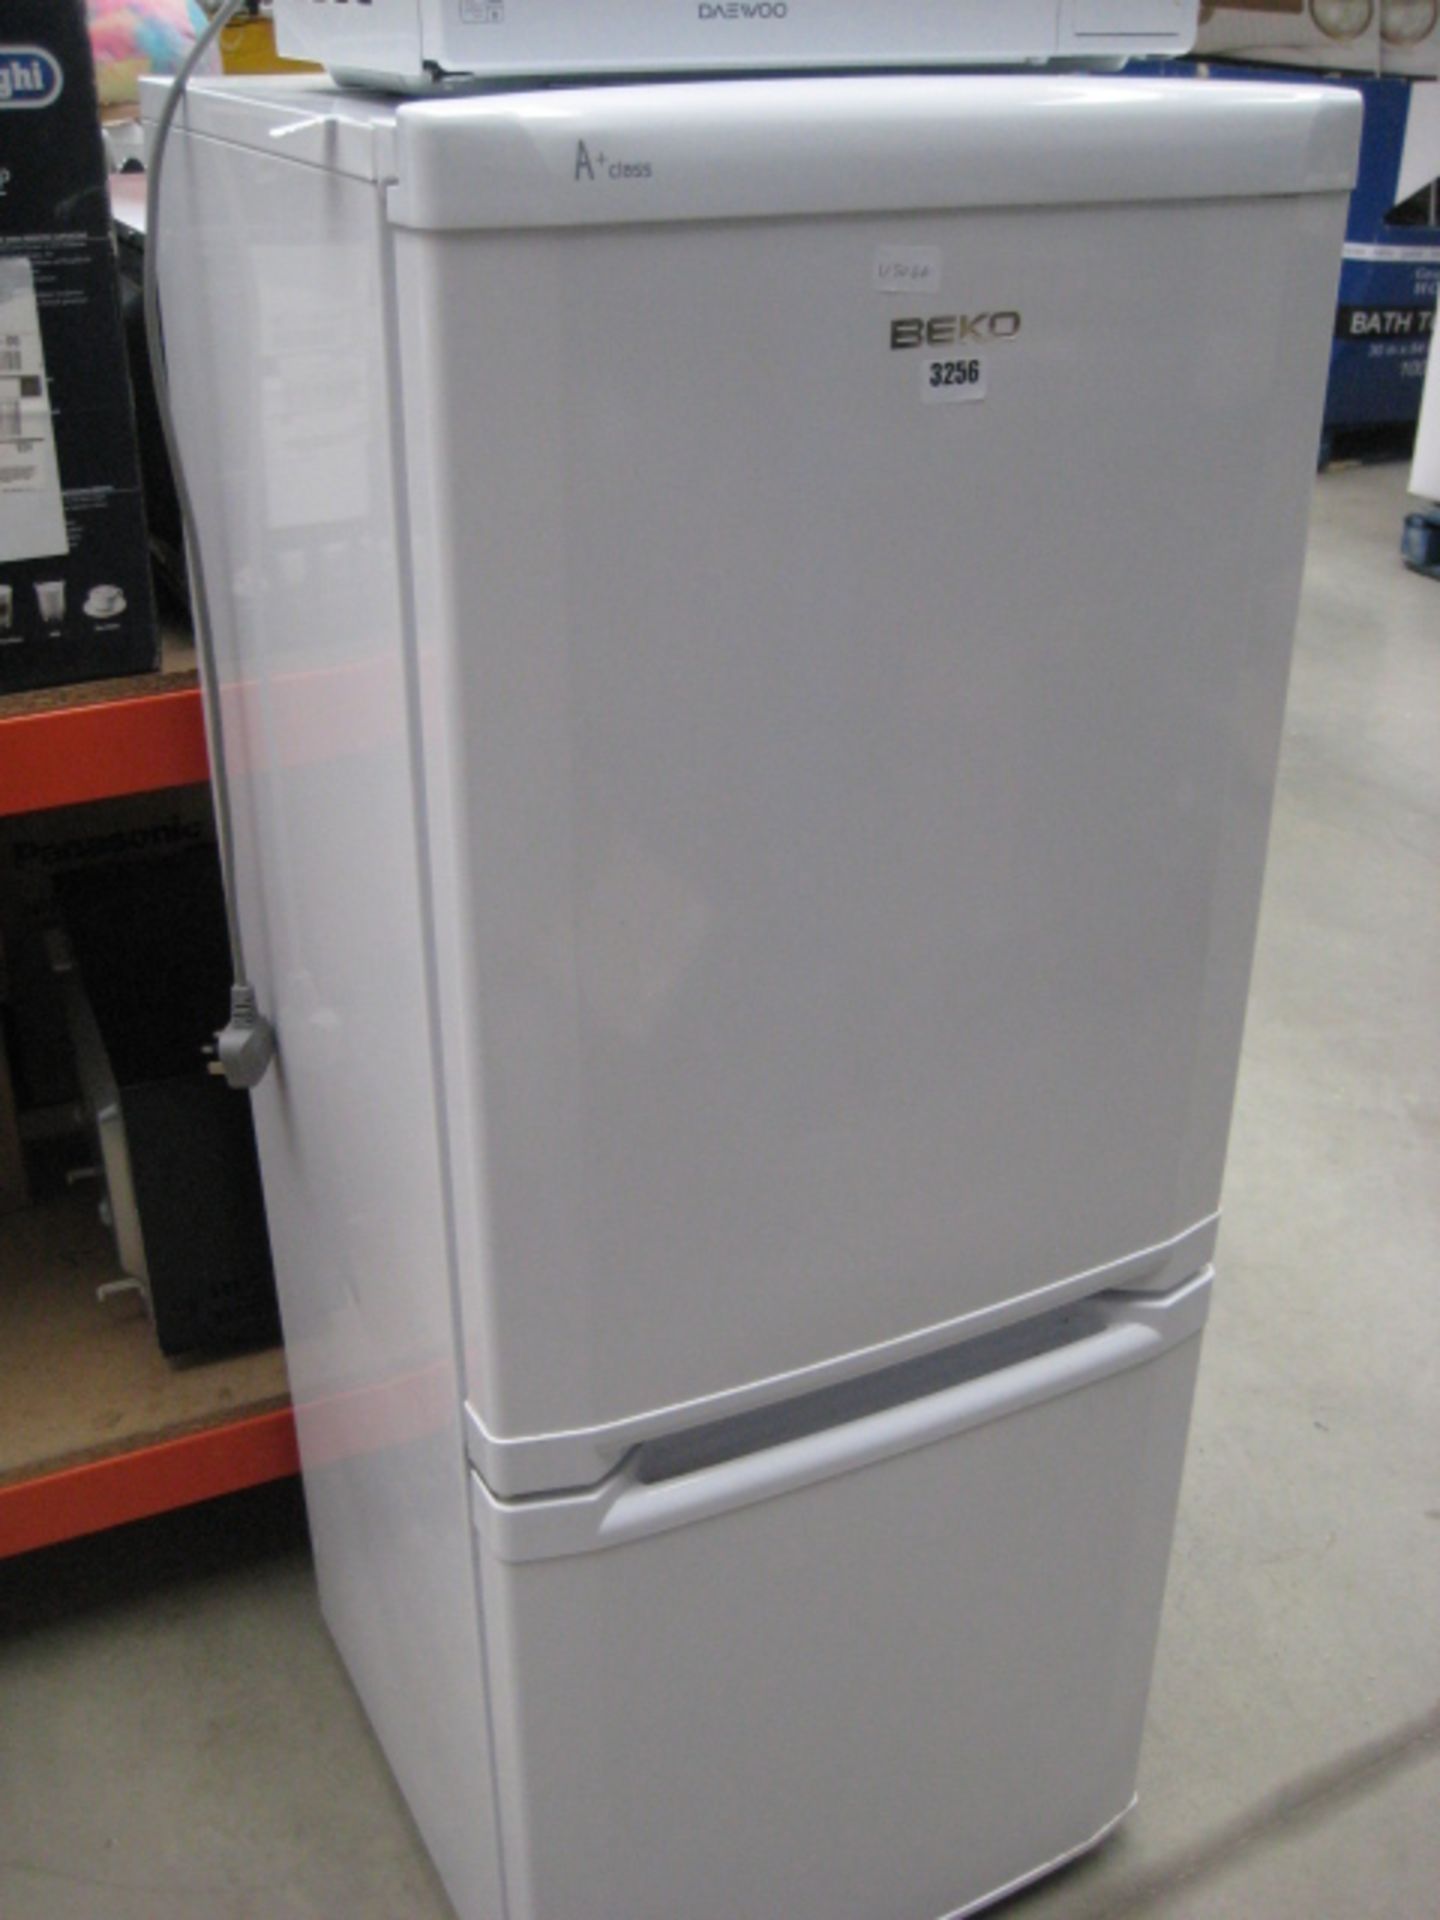 Beko white fridge freezer